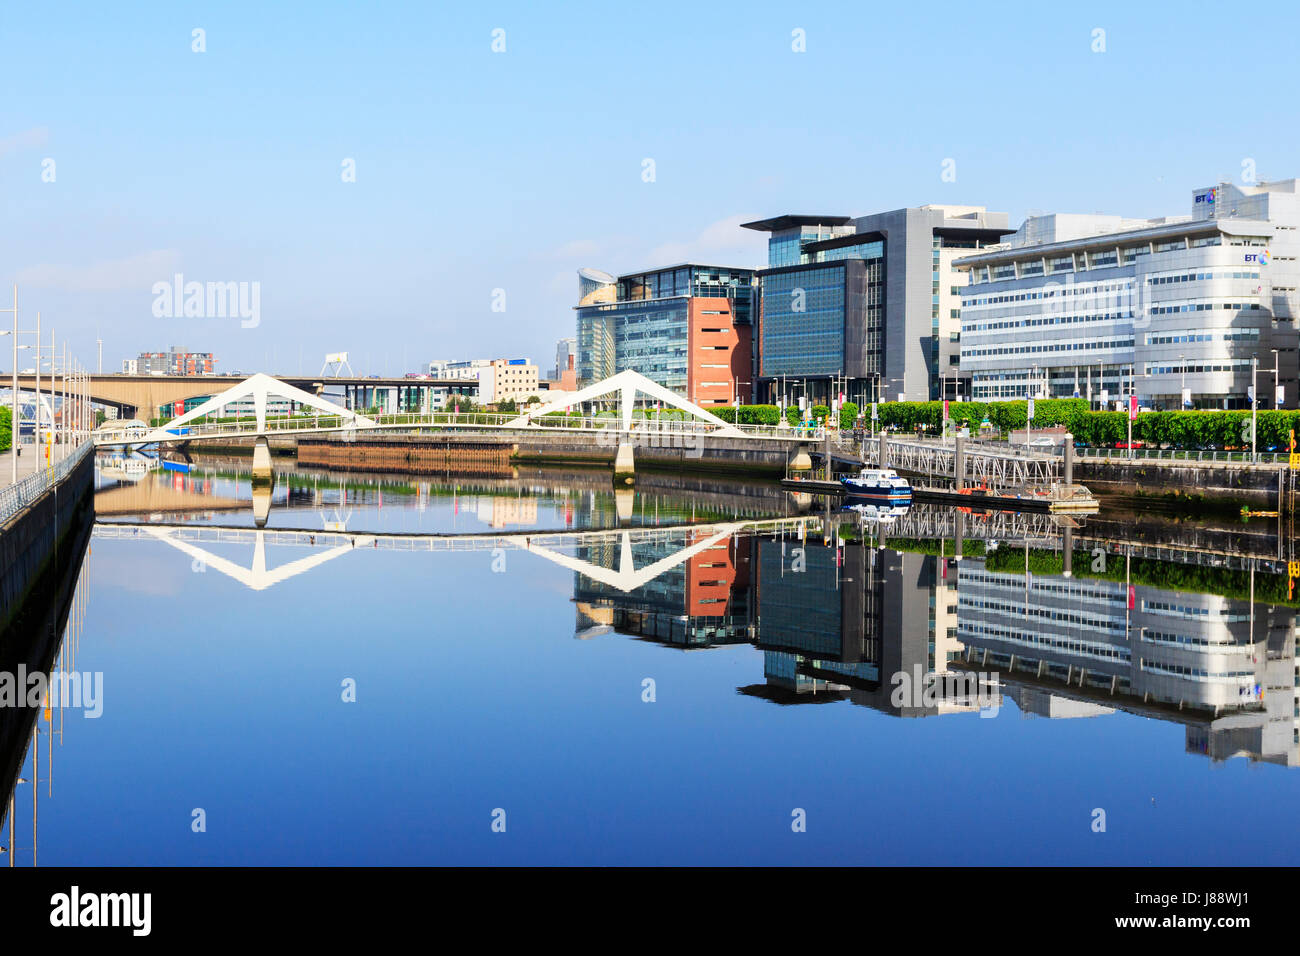 Broomielaw, Glasgow mit der Wirtschaft, Banken und Handel Bezirk entlang des Flusses Clyde in Richtung der Tradeston Brücke, bekannt als die Sq anzeigen Stockfoto